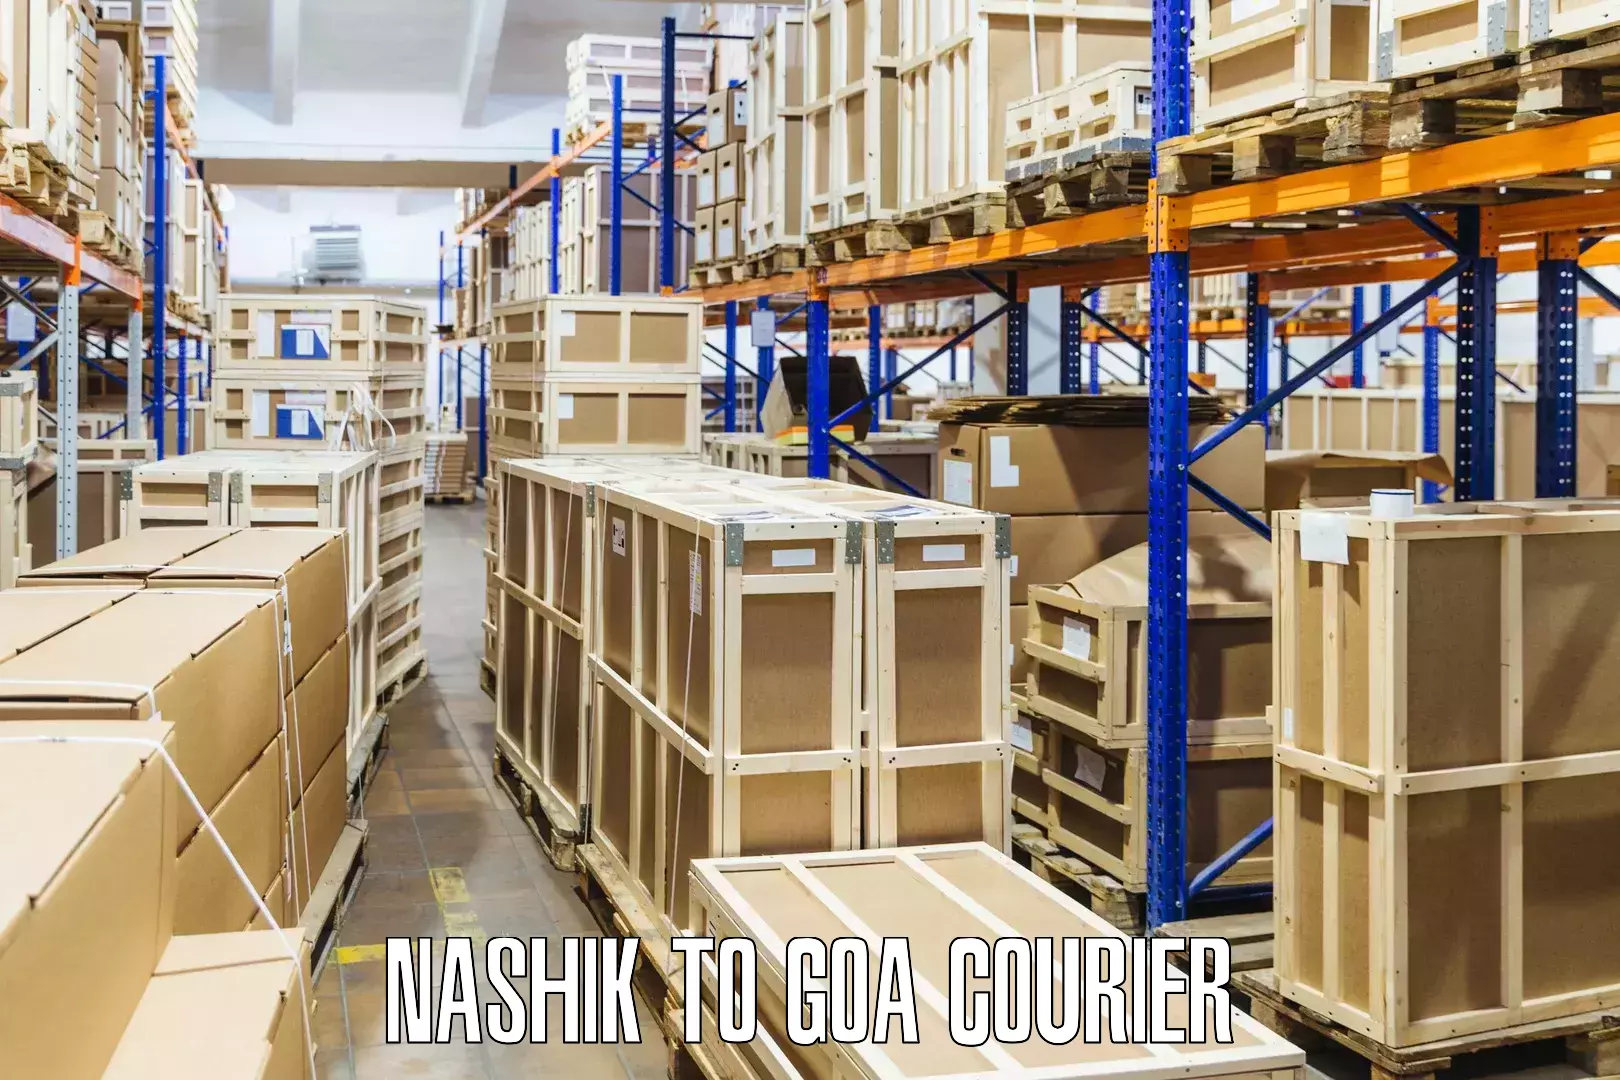 Speedy delivery service in Nashik to Vasco da Gama